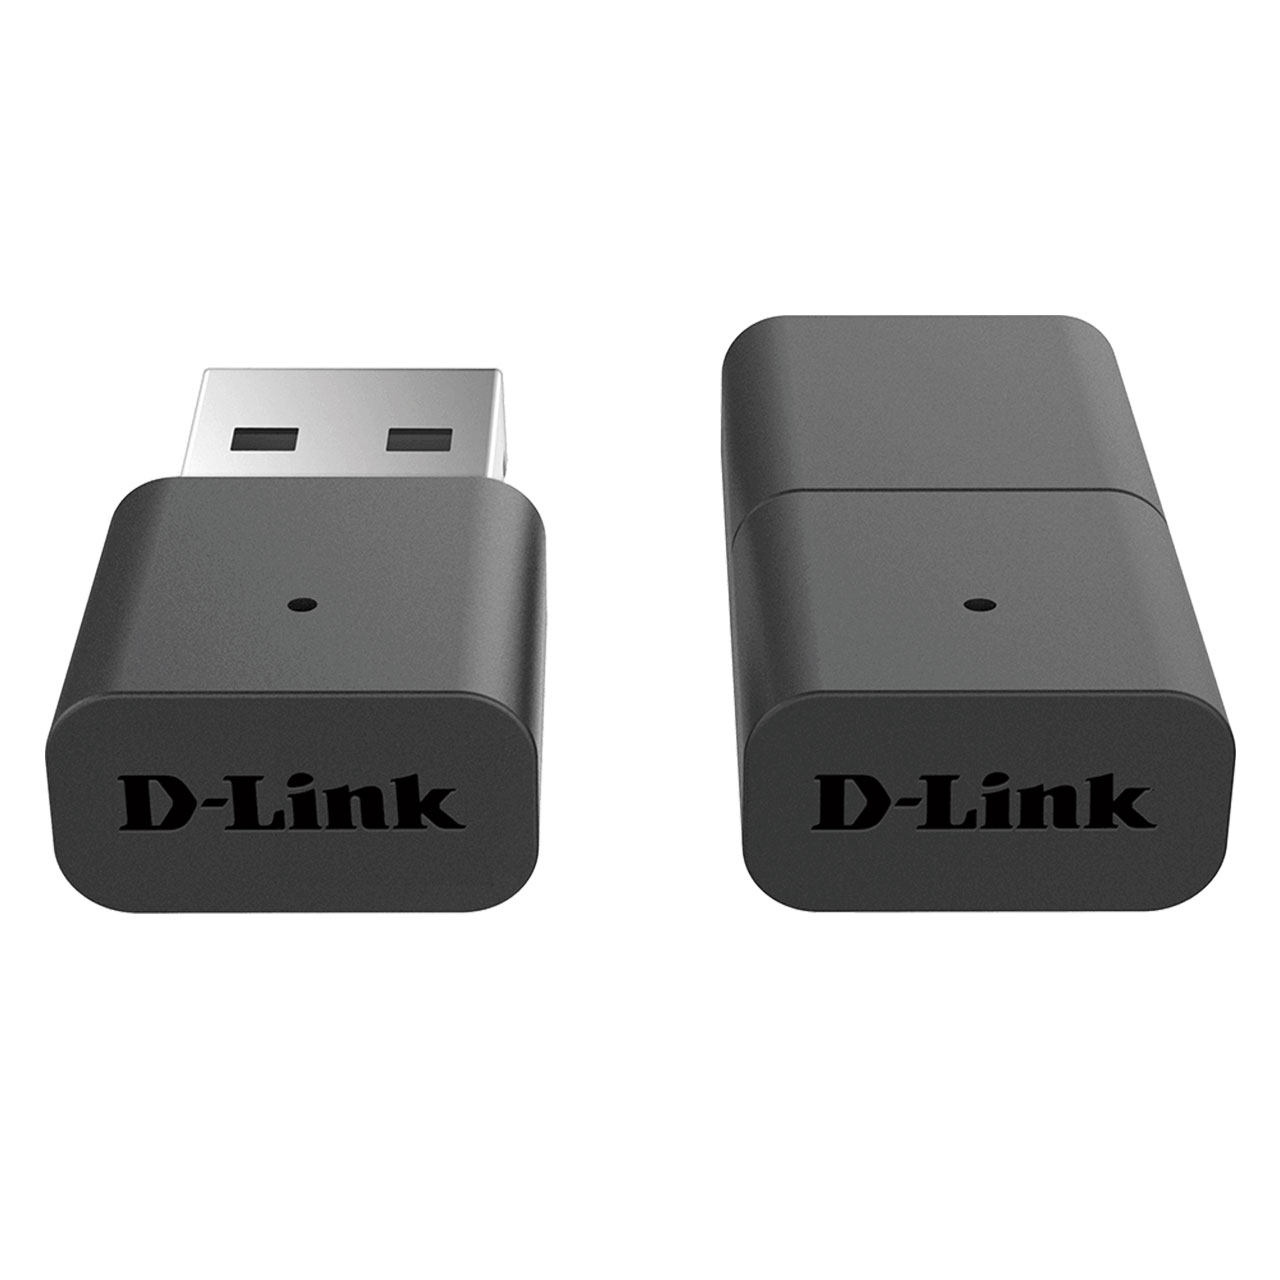 کارت شبکه بی سیم دی لینک D-Link Wireless USB Adapter DWA-131